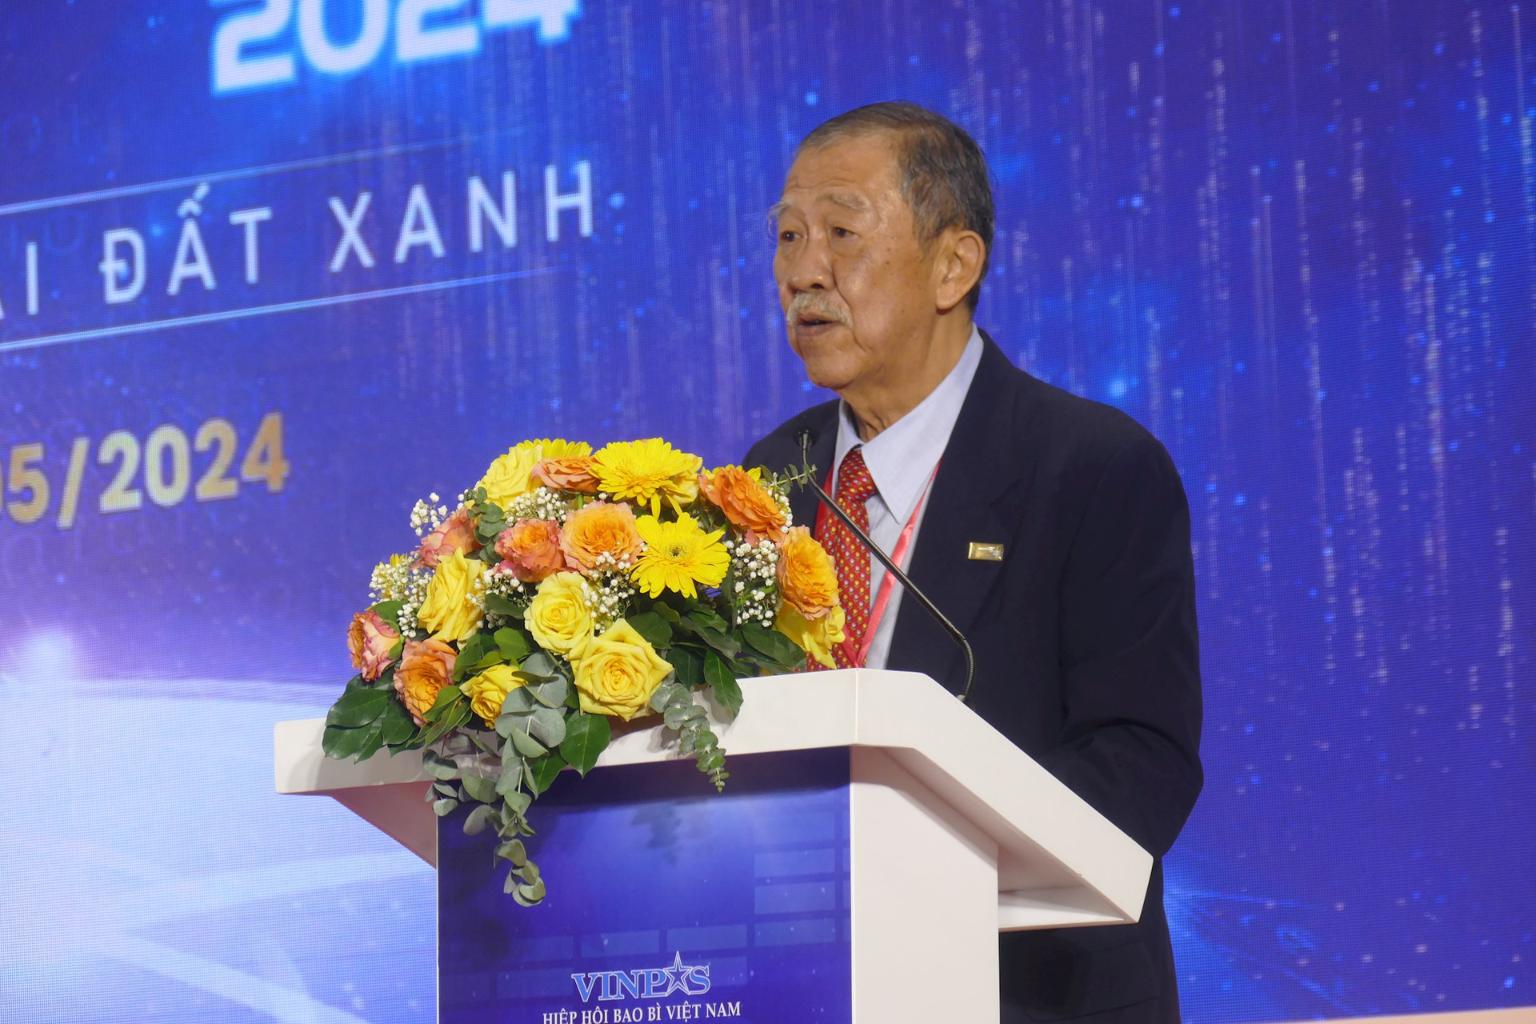 Hiệp hội Bao bì Việt Nam Vinpas 2 1 Giải thưởng Bao bì Việt Nam 2024: Bao bì xanh vì trái đất xanh